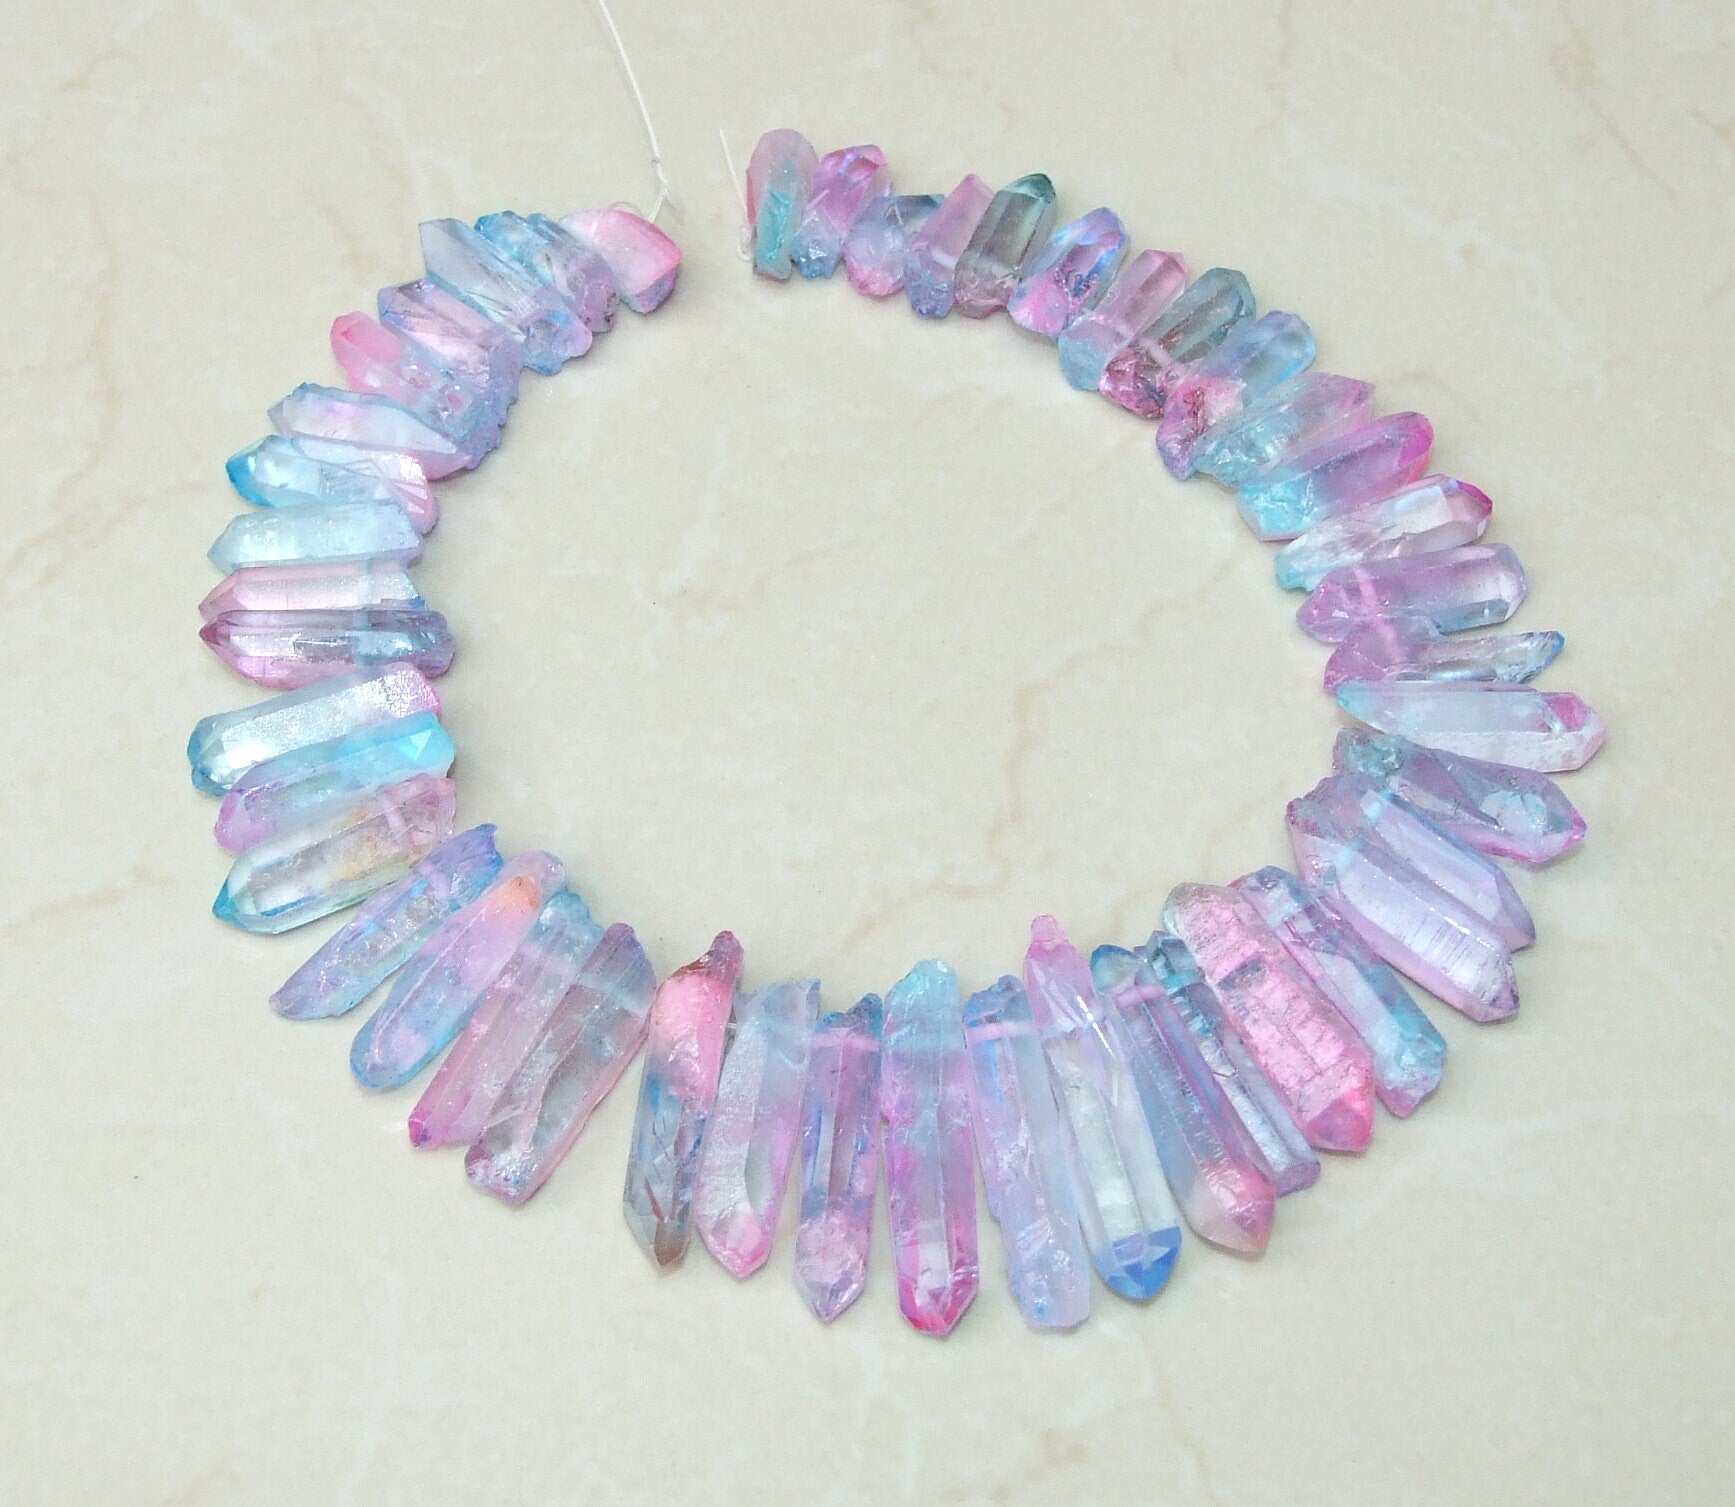 Light Blue & Pink Titanium Quartz Points, Quartz Crystal, Crystals Points, Raw Crystal Quartz Strand, Gemstones Beads - 20mm - 40+mm